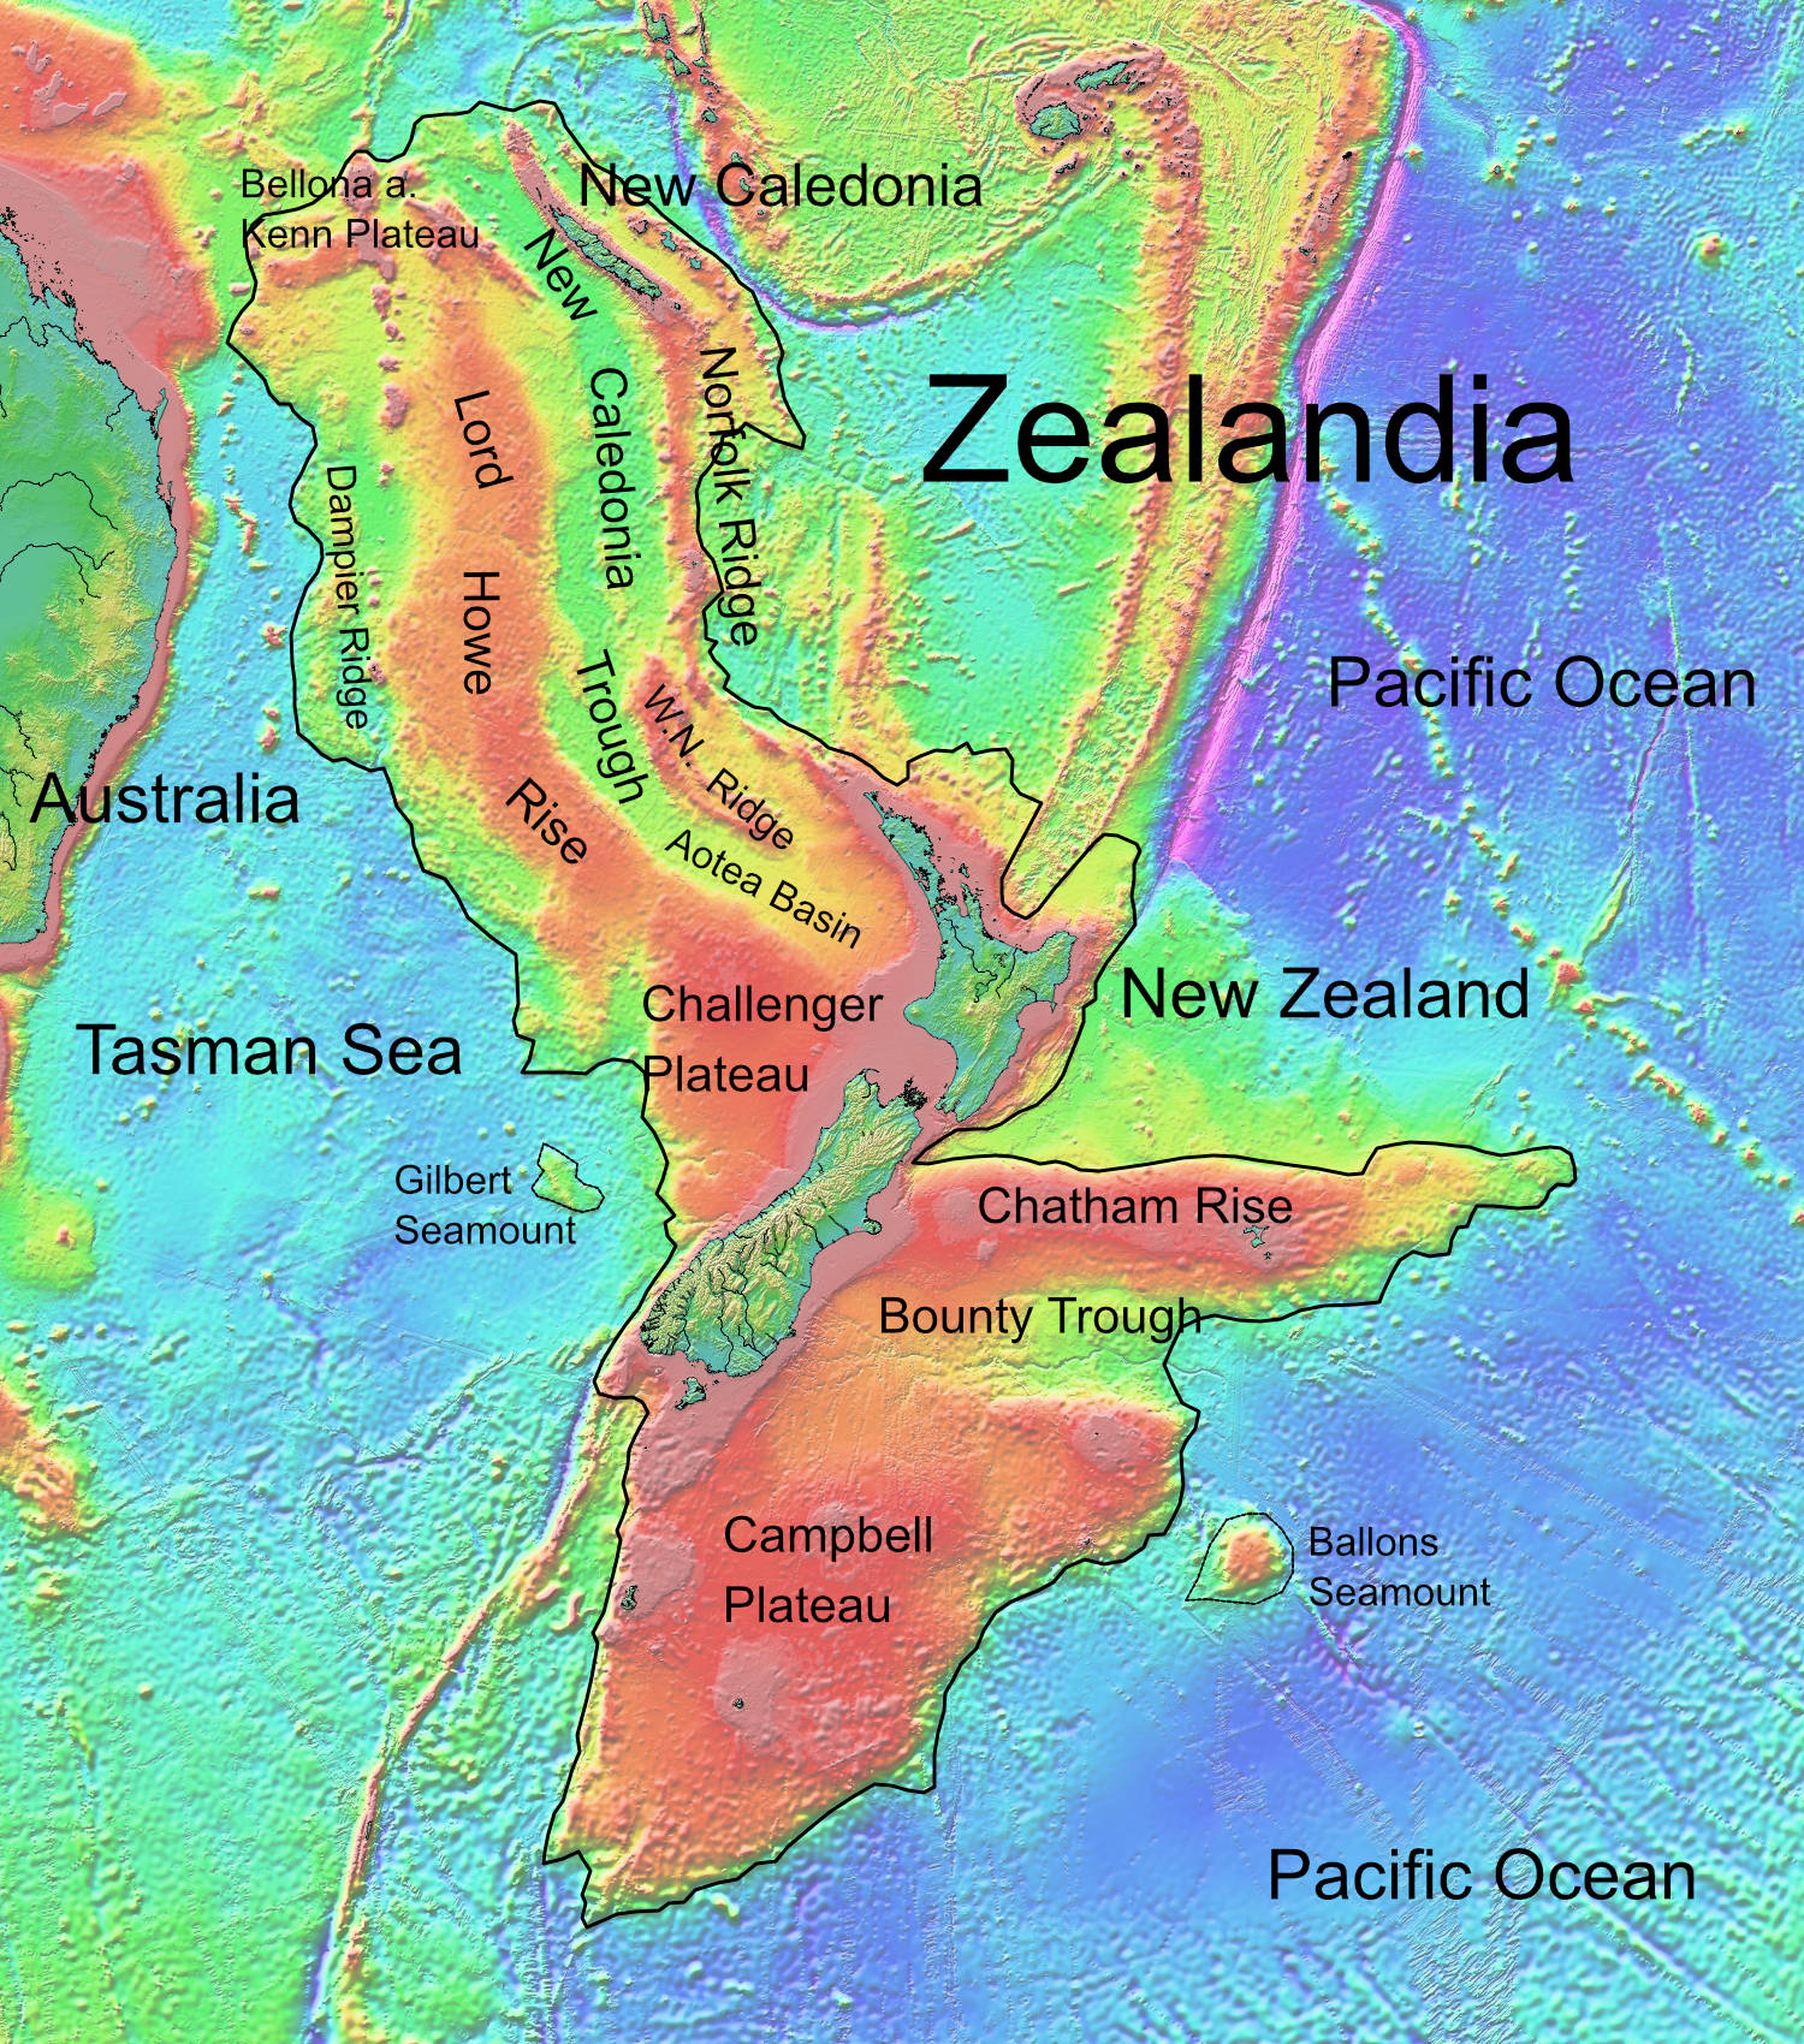 La Tierra tiene oficialmente un nuevo continente: Zelandia